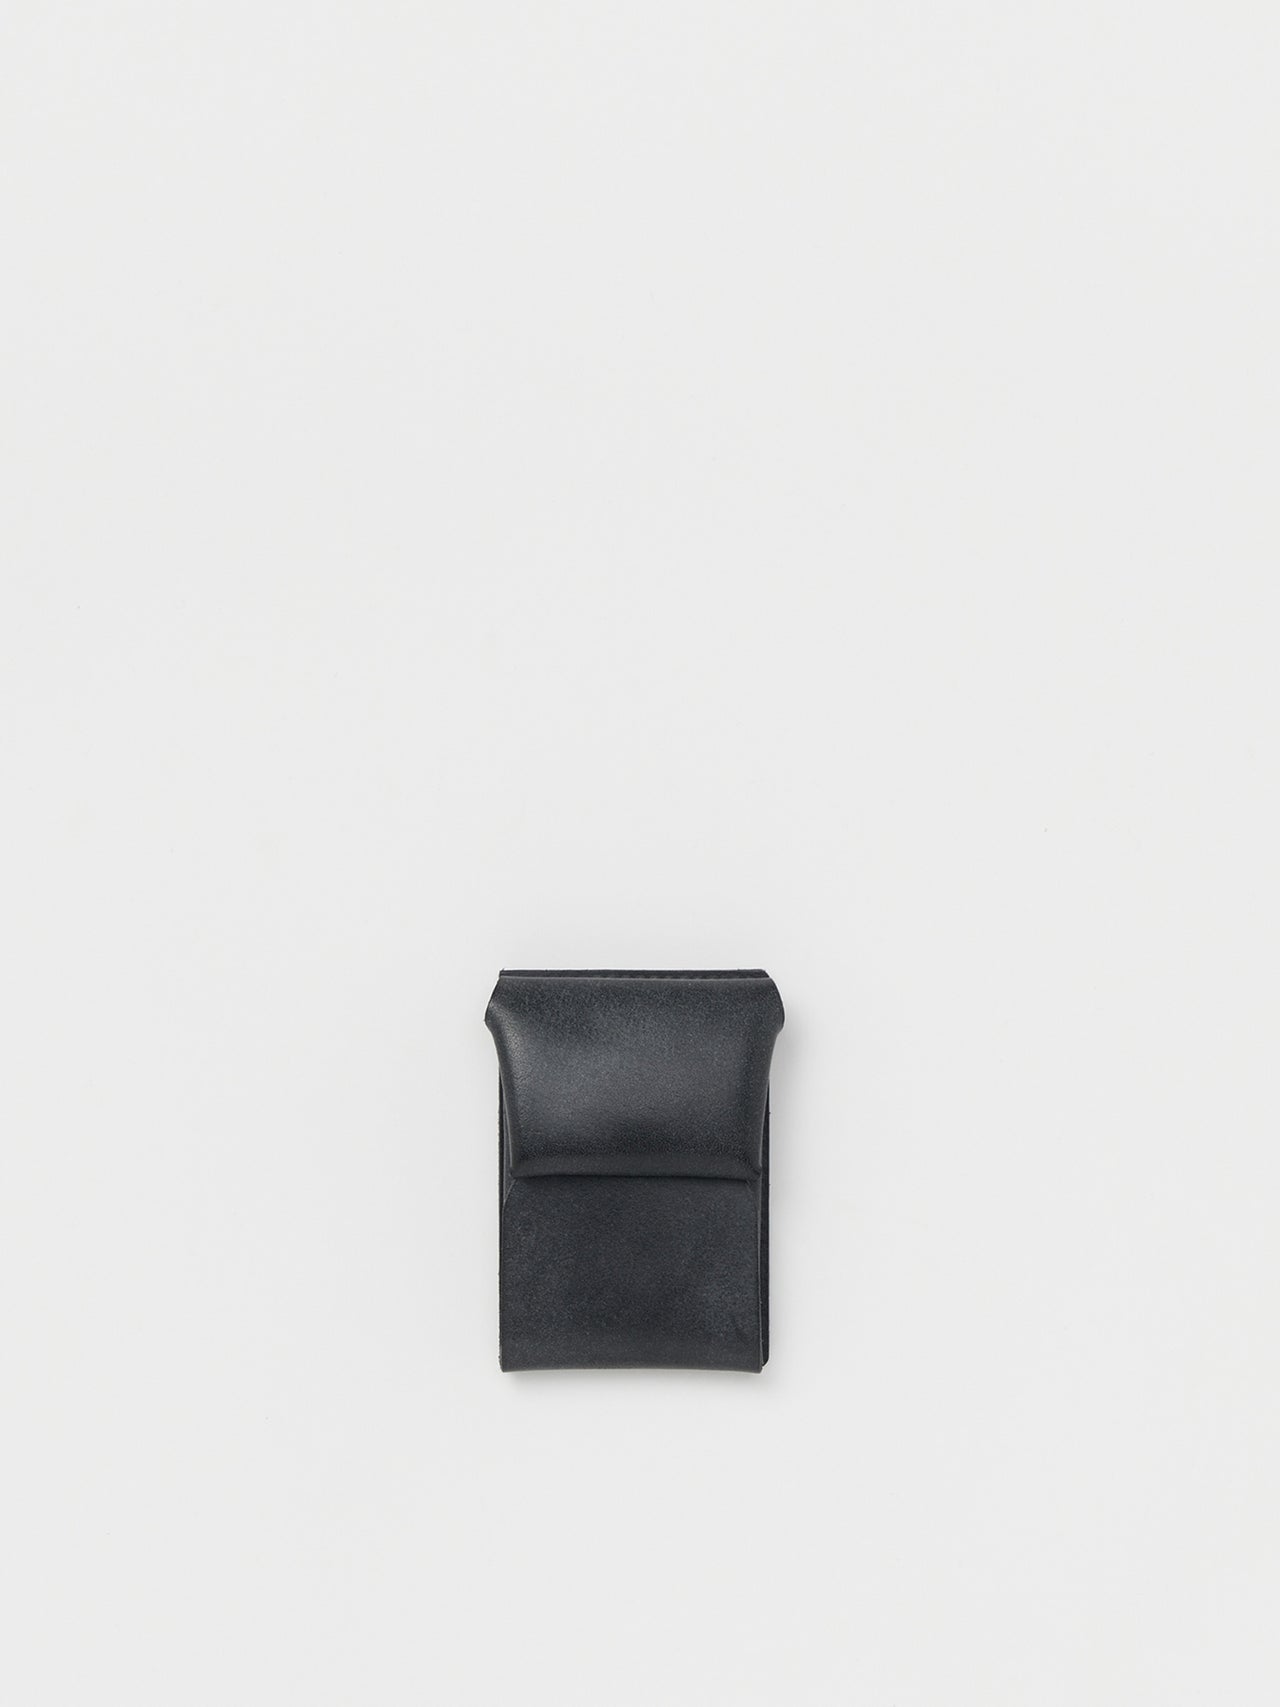 Hender Scheme / minimal wallet (BLACK)